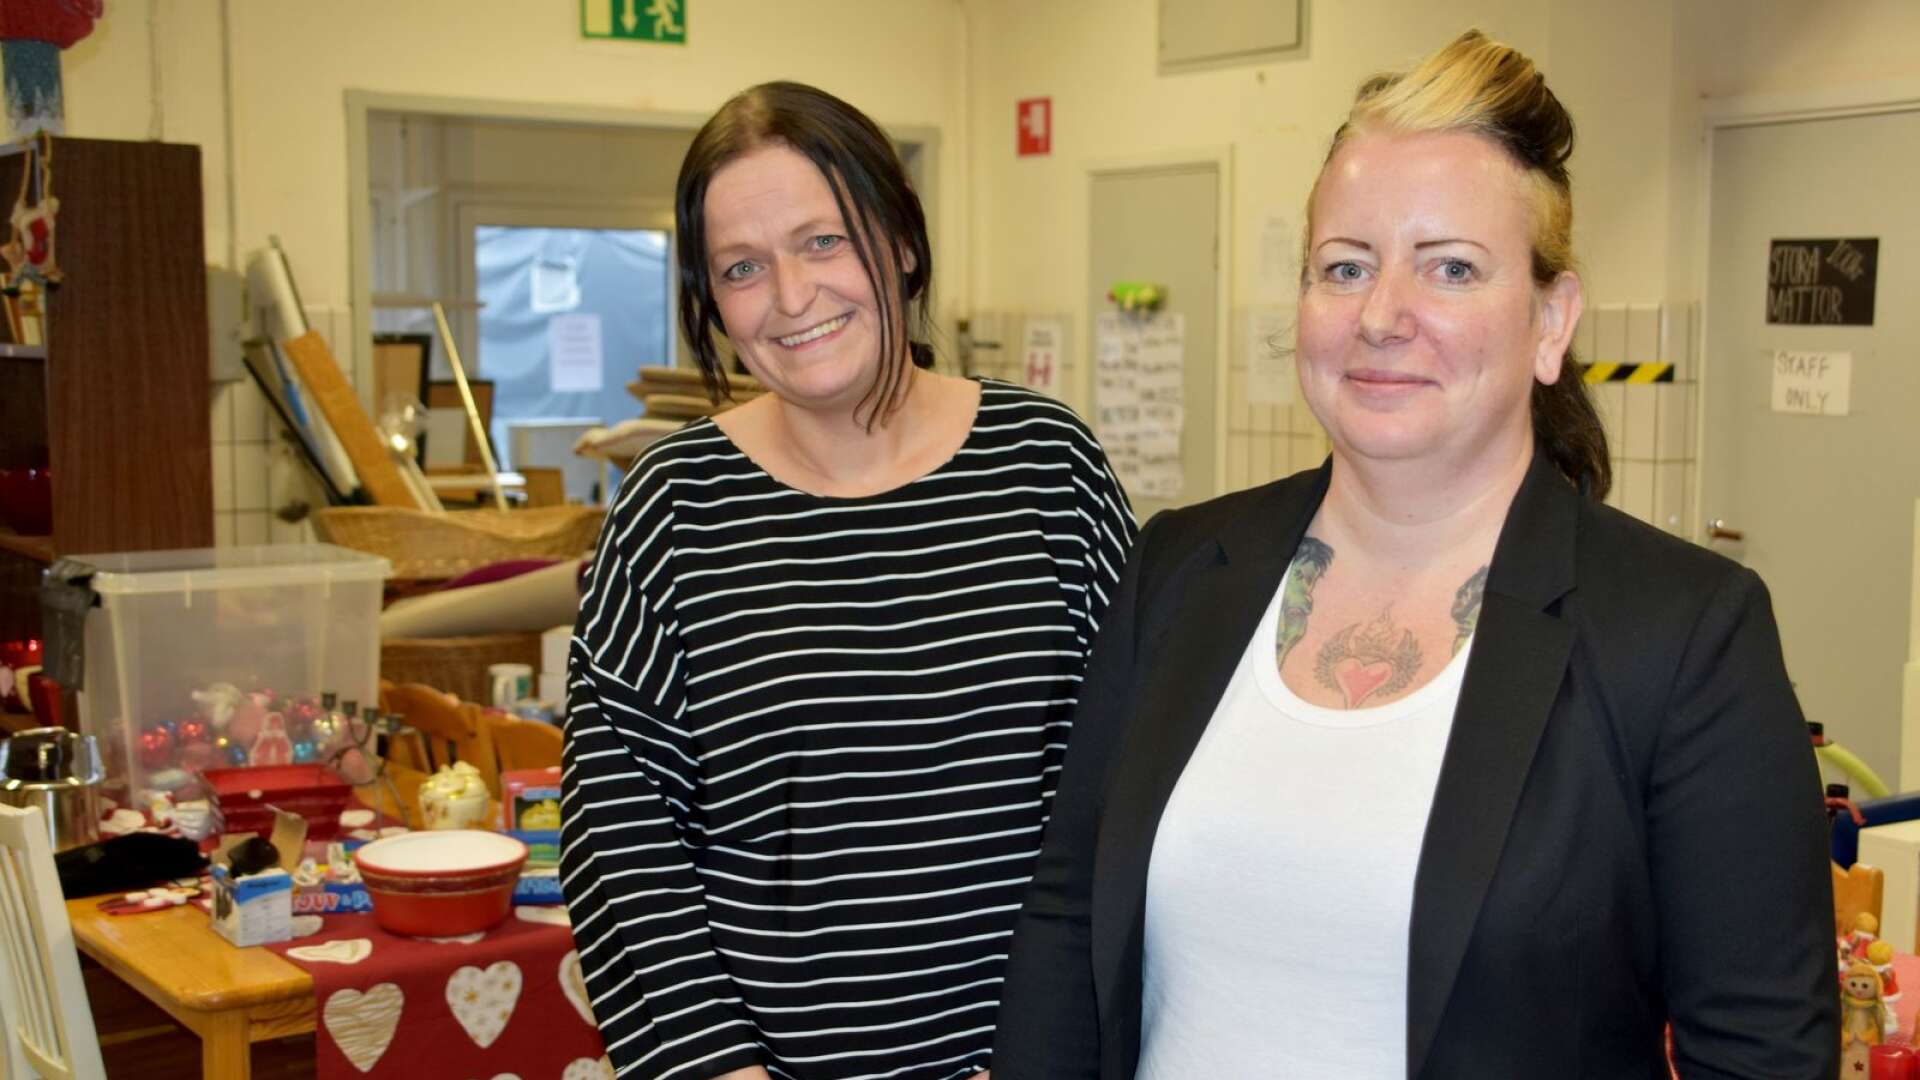 Jennie Östberg och Therese Lindén, två av de fyra kvinnor som tillsammans vill starta ett kooperativ i form av ett arbetsintegrerande socialt företag i Arvika. De andra två är Jennifer Sidén och Jenny Thunér som inte hade möjlighet att närvara vid tisdagens träff.